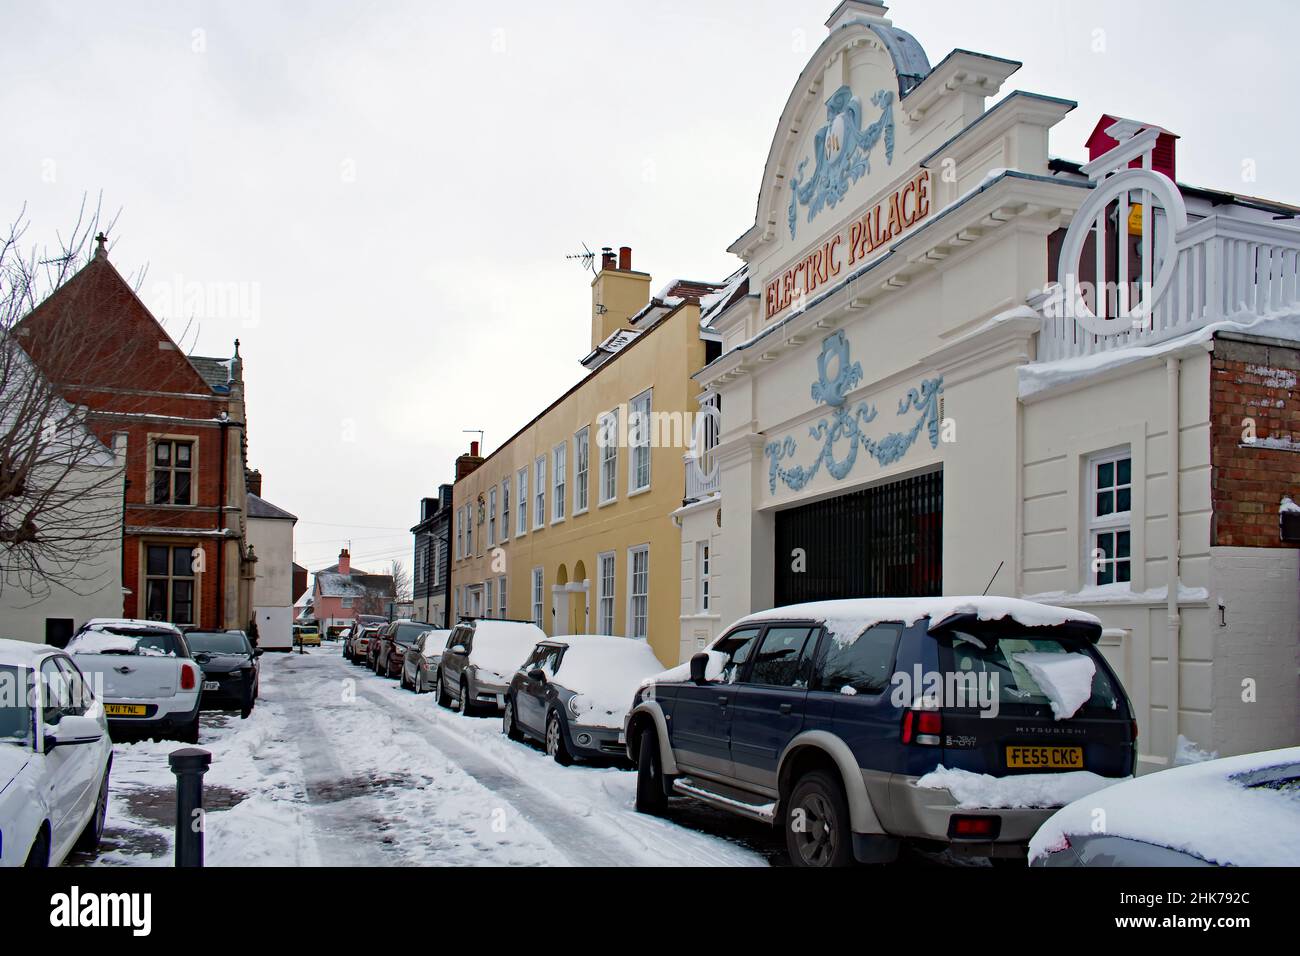 La facciata anteriore del Palazzo elettrico, uno dei più antichi cinema sopravvissuti, Harwich, Regno Unito. Strada storica con auto parcheggiate e neve. Foto Stock